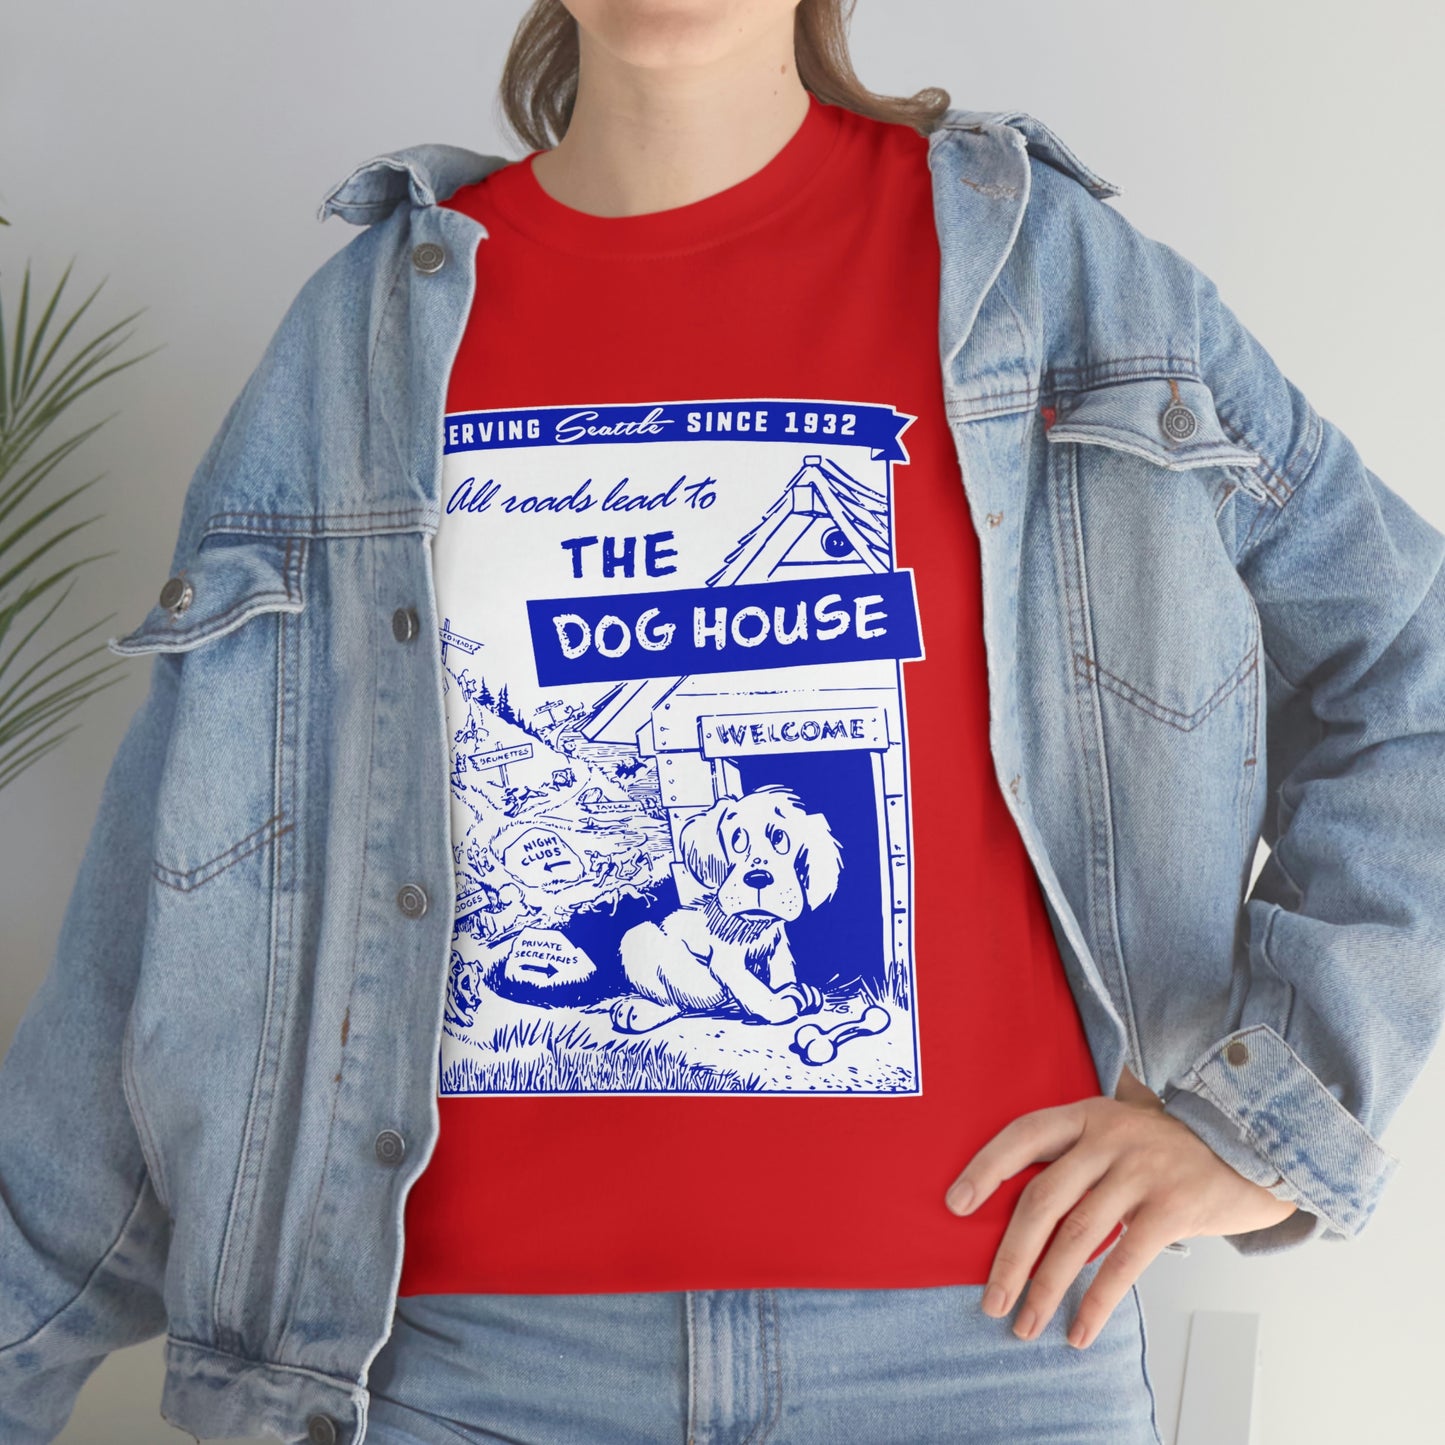 THE DOGHOUSE Menu Unisex Cotton T-Shirt